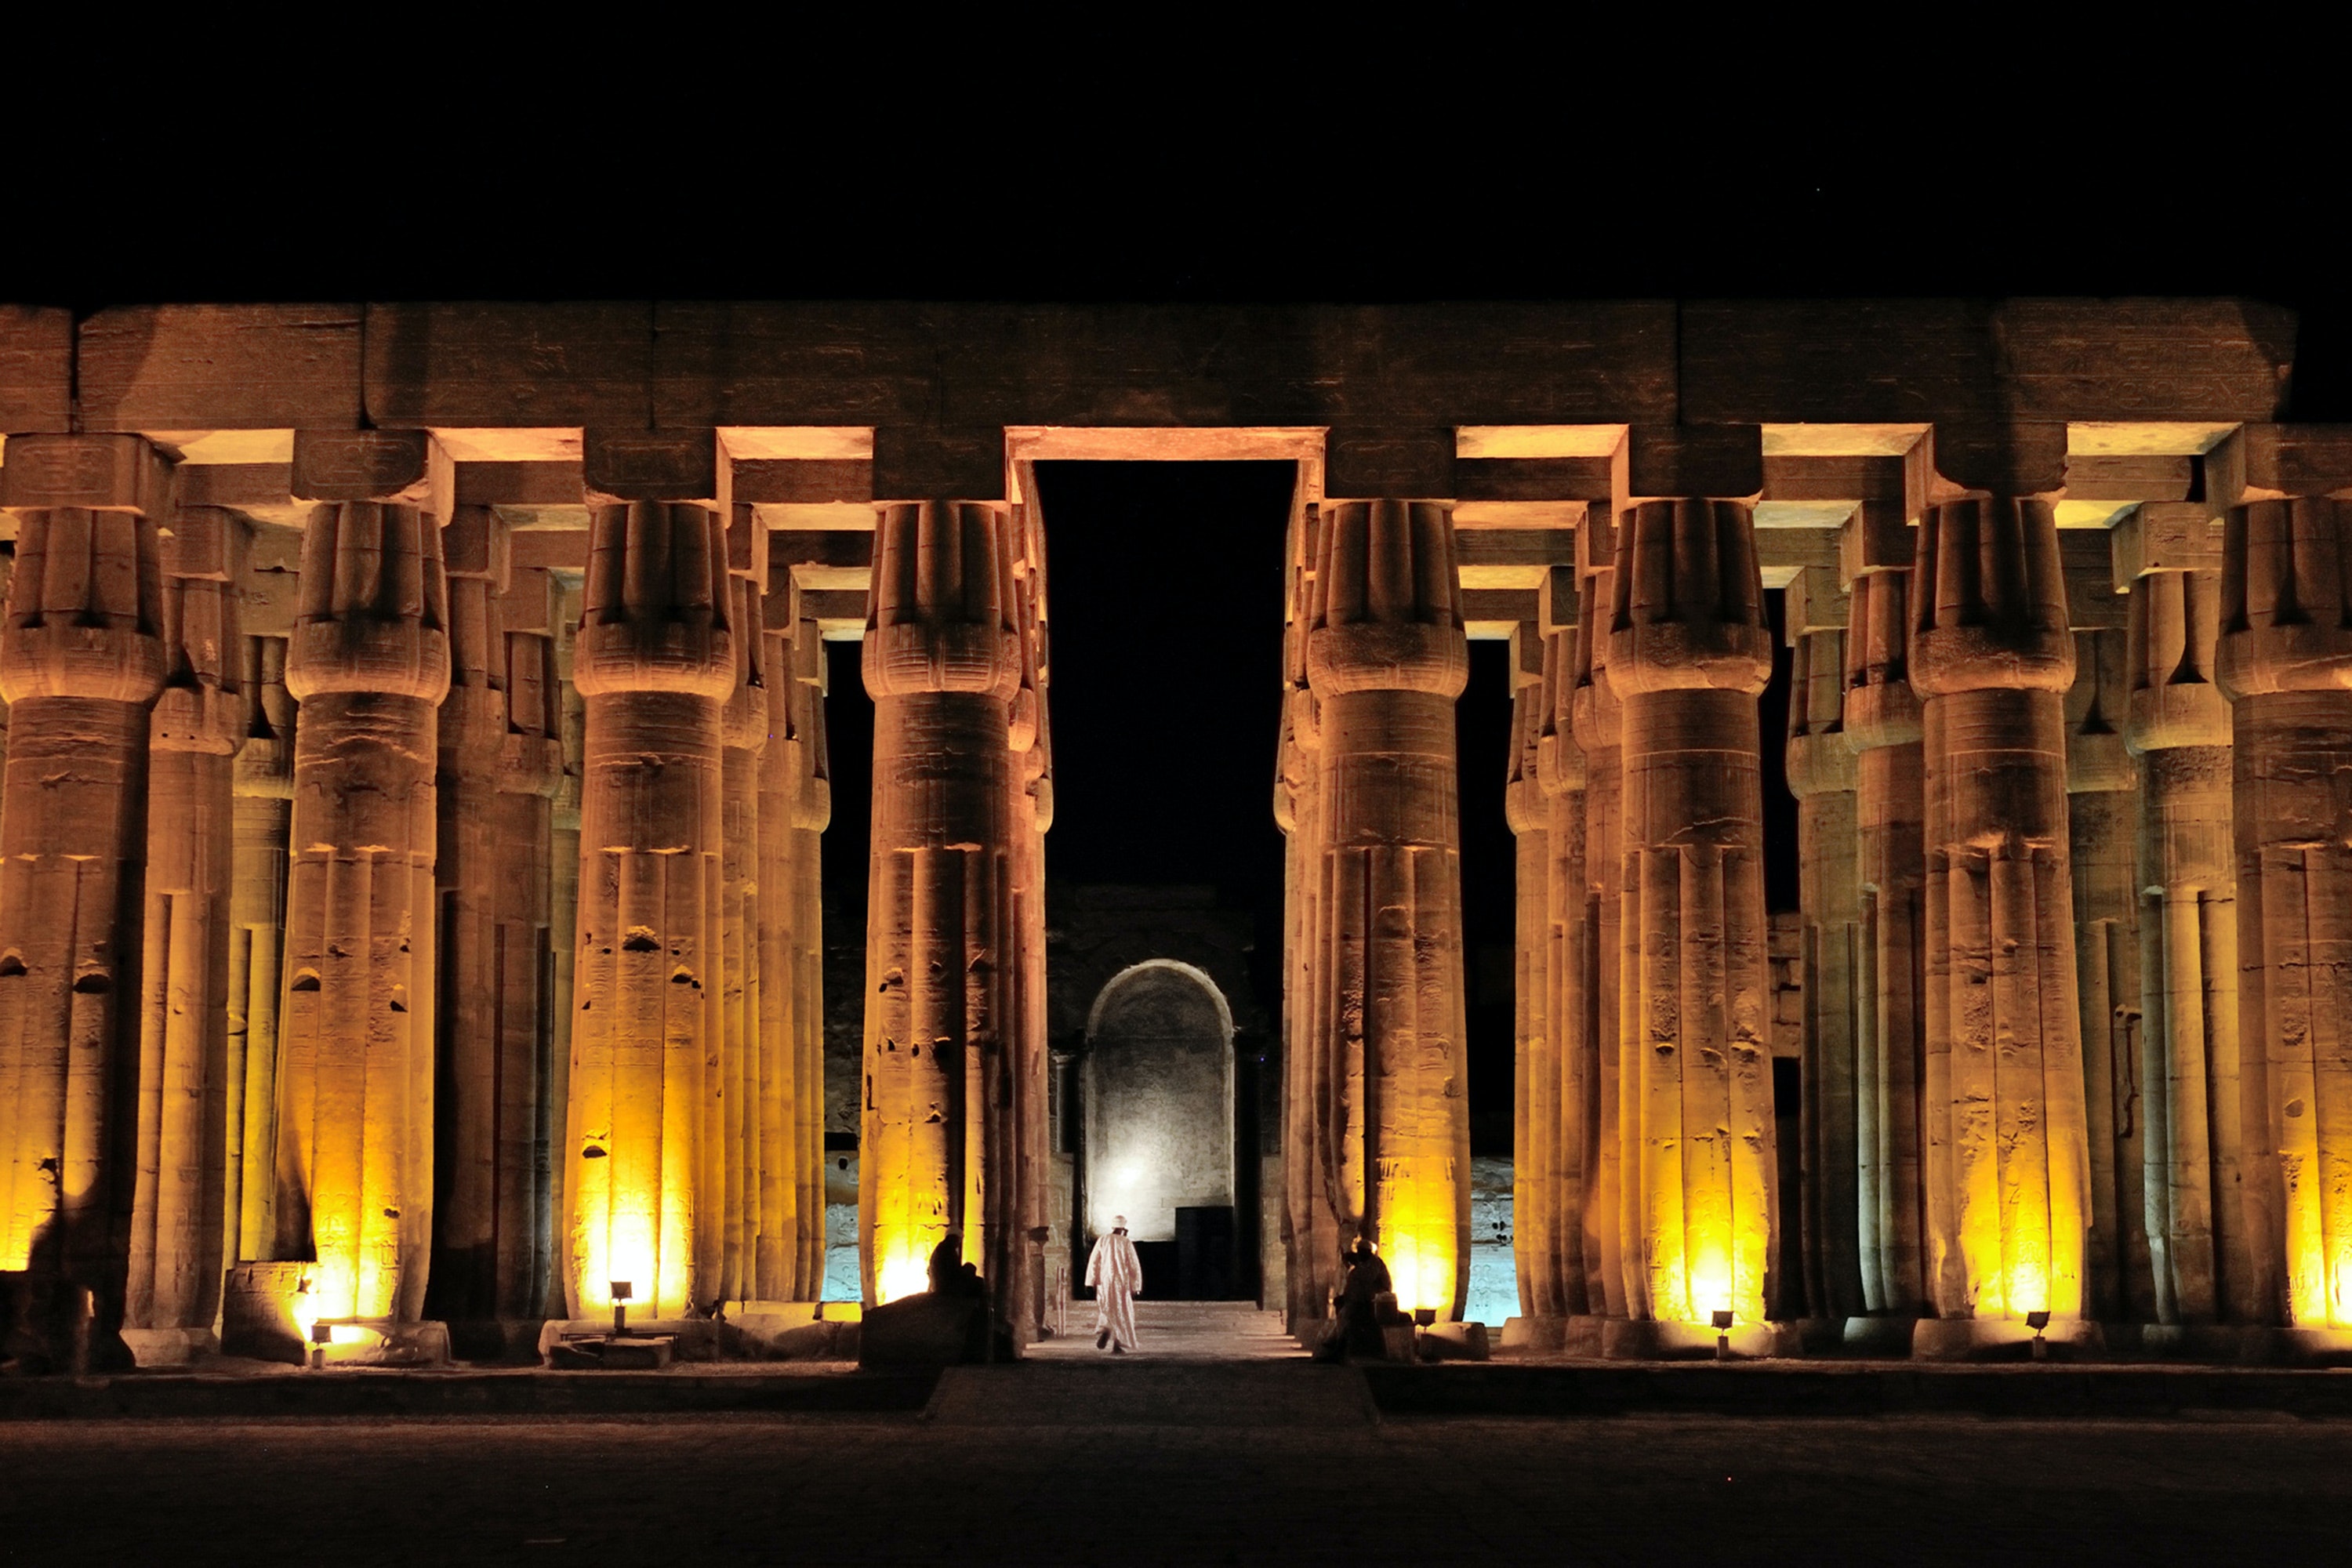 Egitto Tempio di Luxor